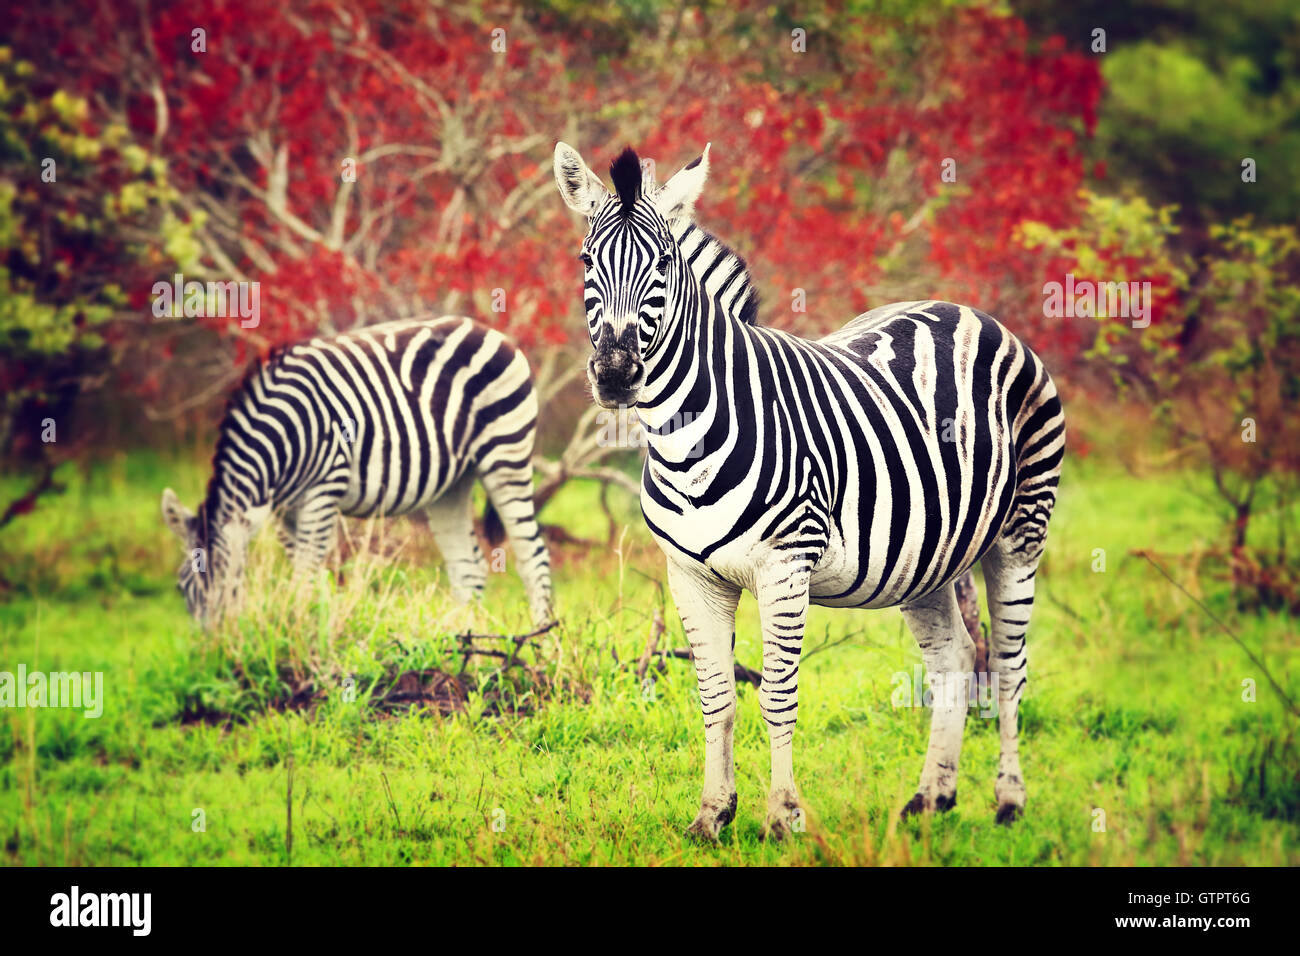 Les zèbres de l'Afrique, l'alimentation des animaux sauvages de l'herbe dans le parc national Kruger, safari, safari Eco Voyages et tourisme Banque D'Images